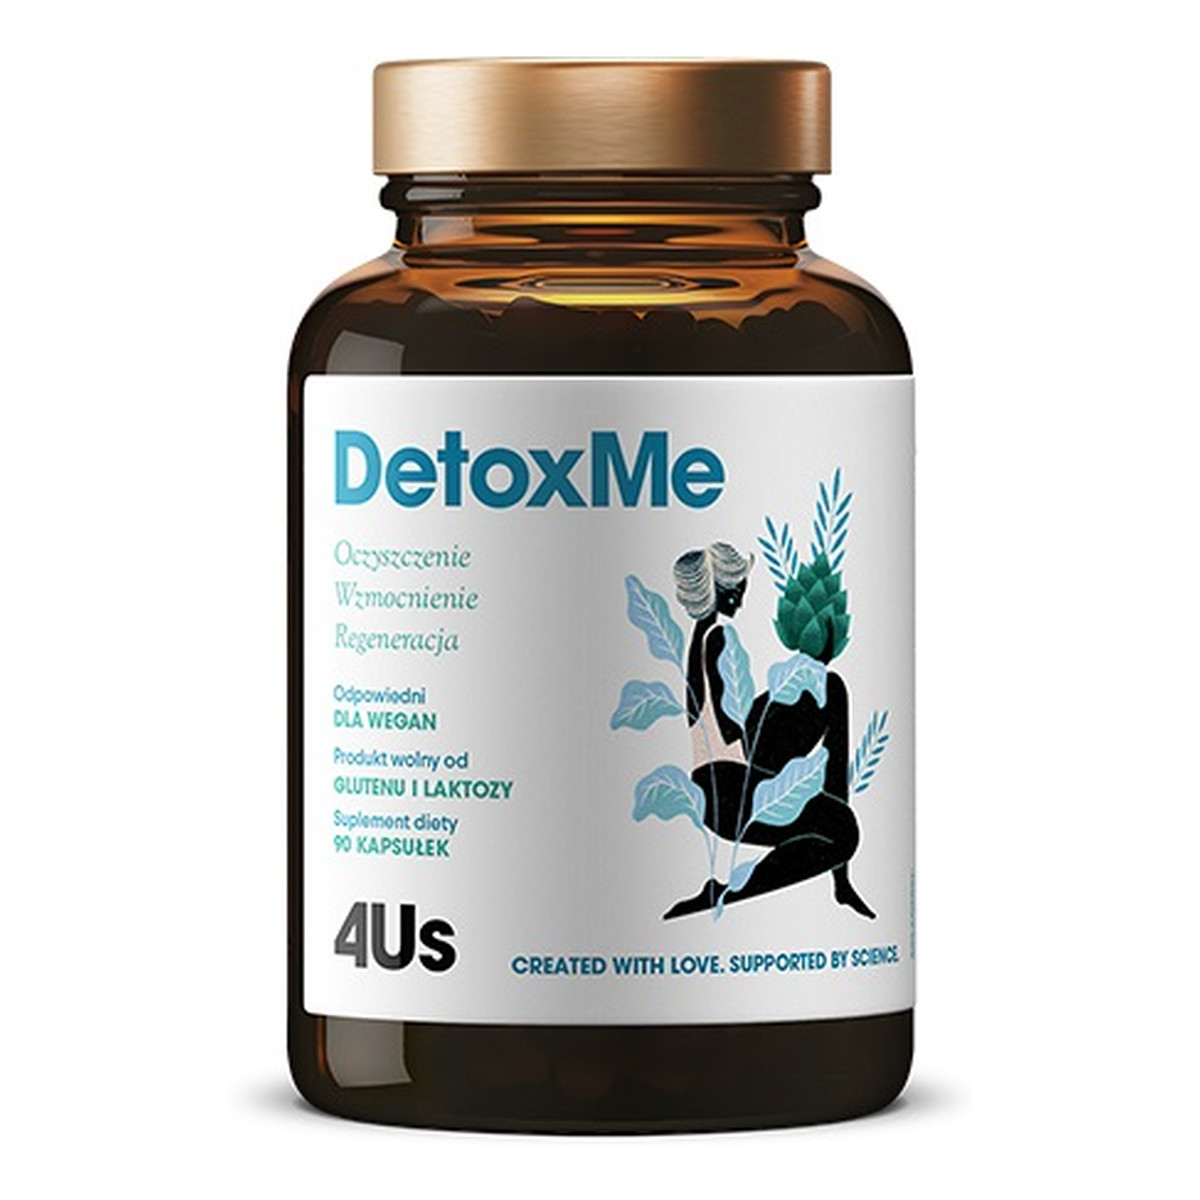 HealthLabs 4us detoxme oczyszczenie wzmocnienie i regeneracja suplement diety 90 kapsułek